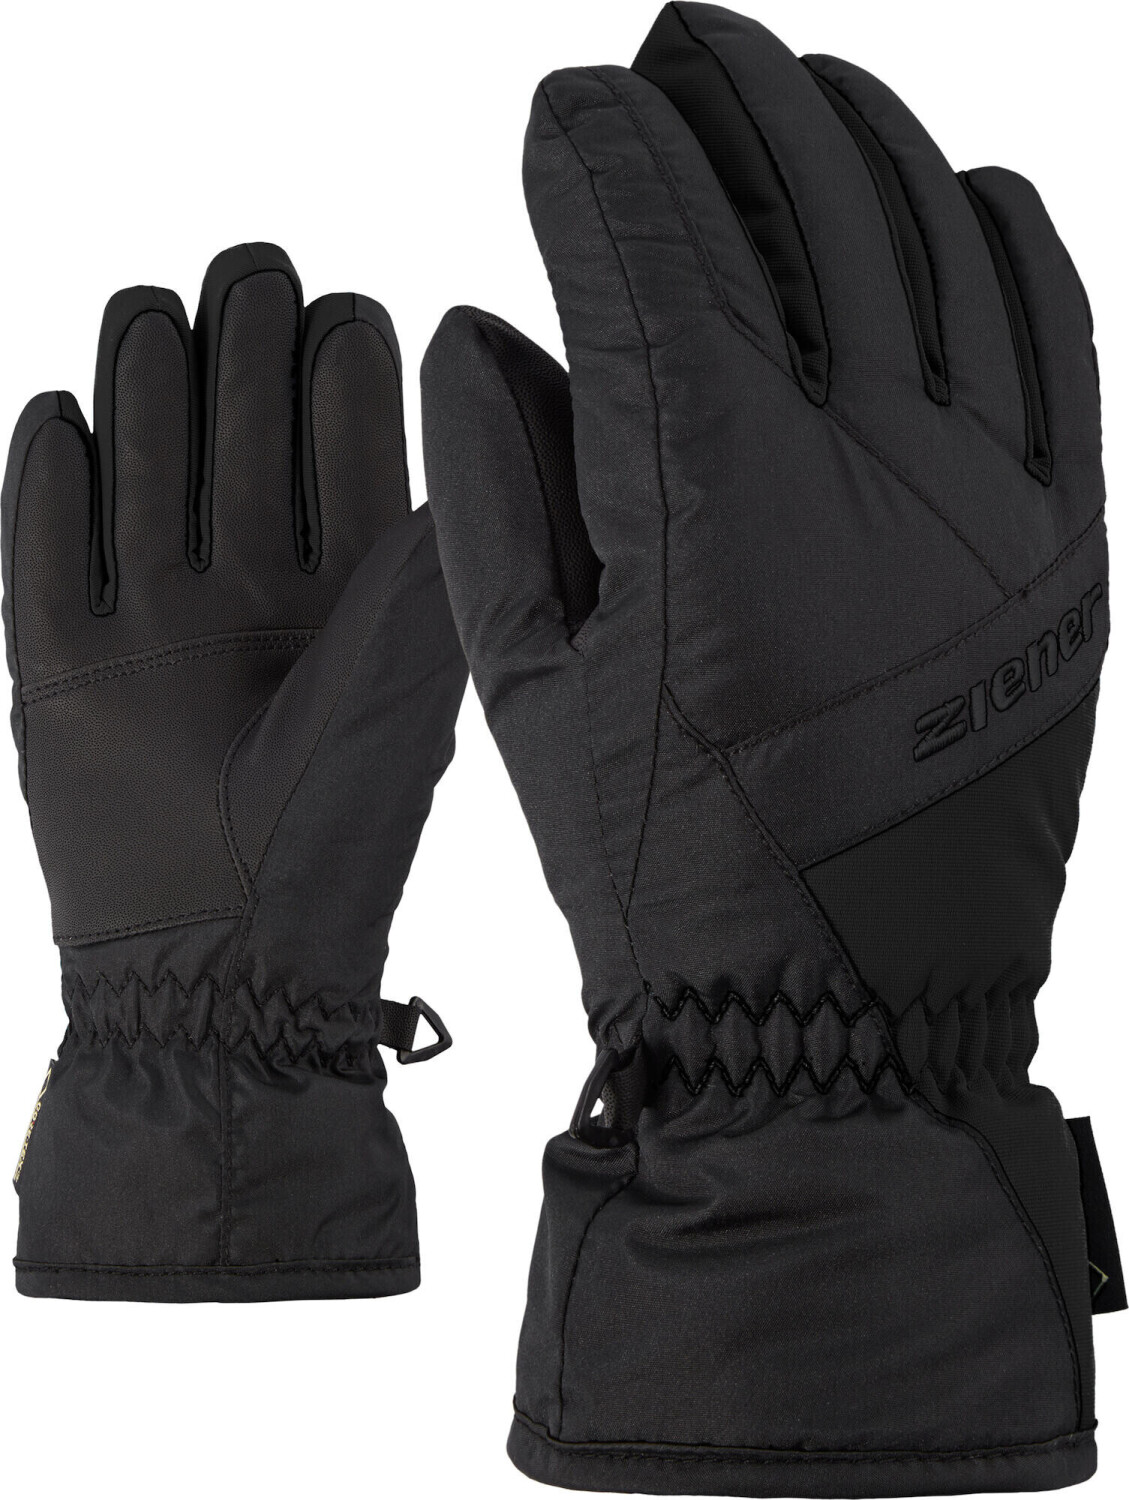 Ziener Linard Junior | € GTX bei Preisvergleich (801908) Glove black 24,55 ab